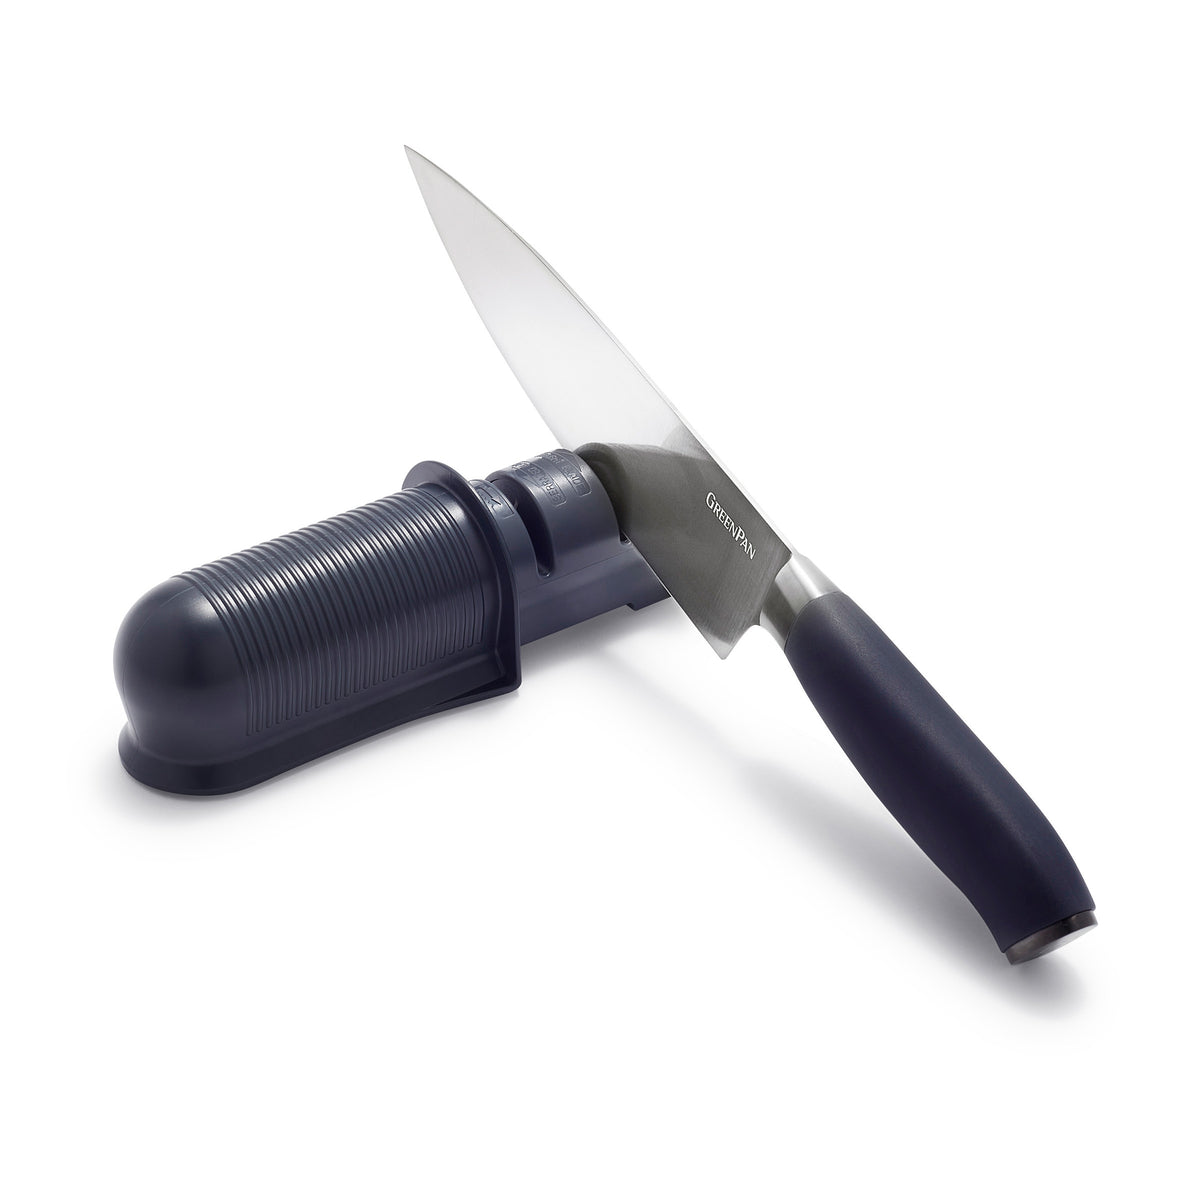 2-STAGE KNIFE SHARPENER, LT2148